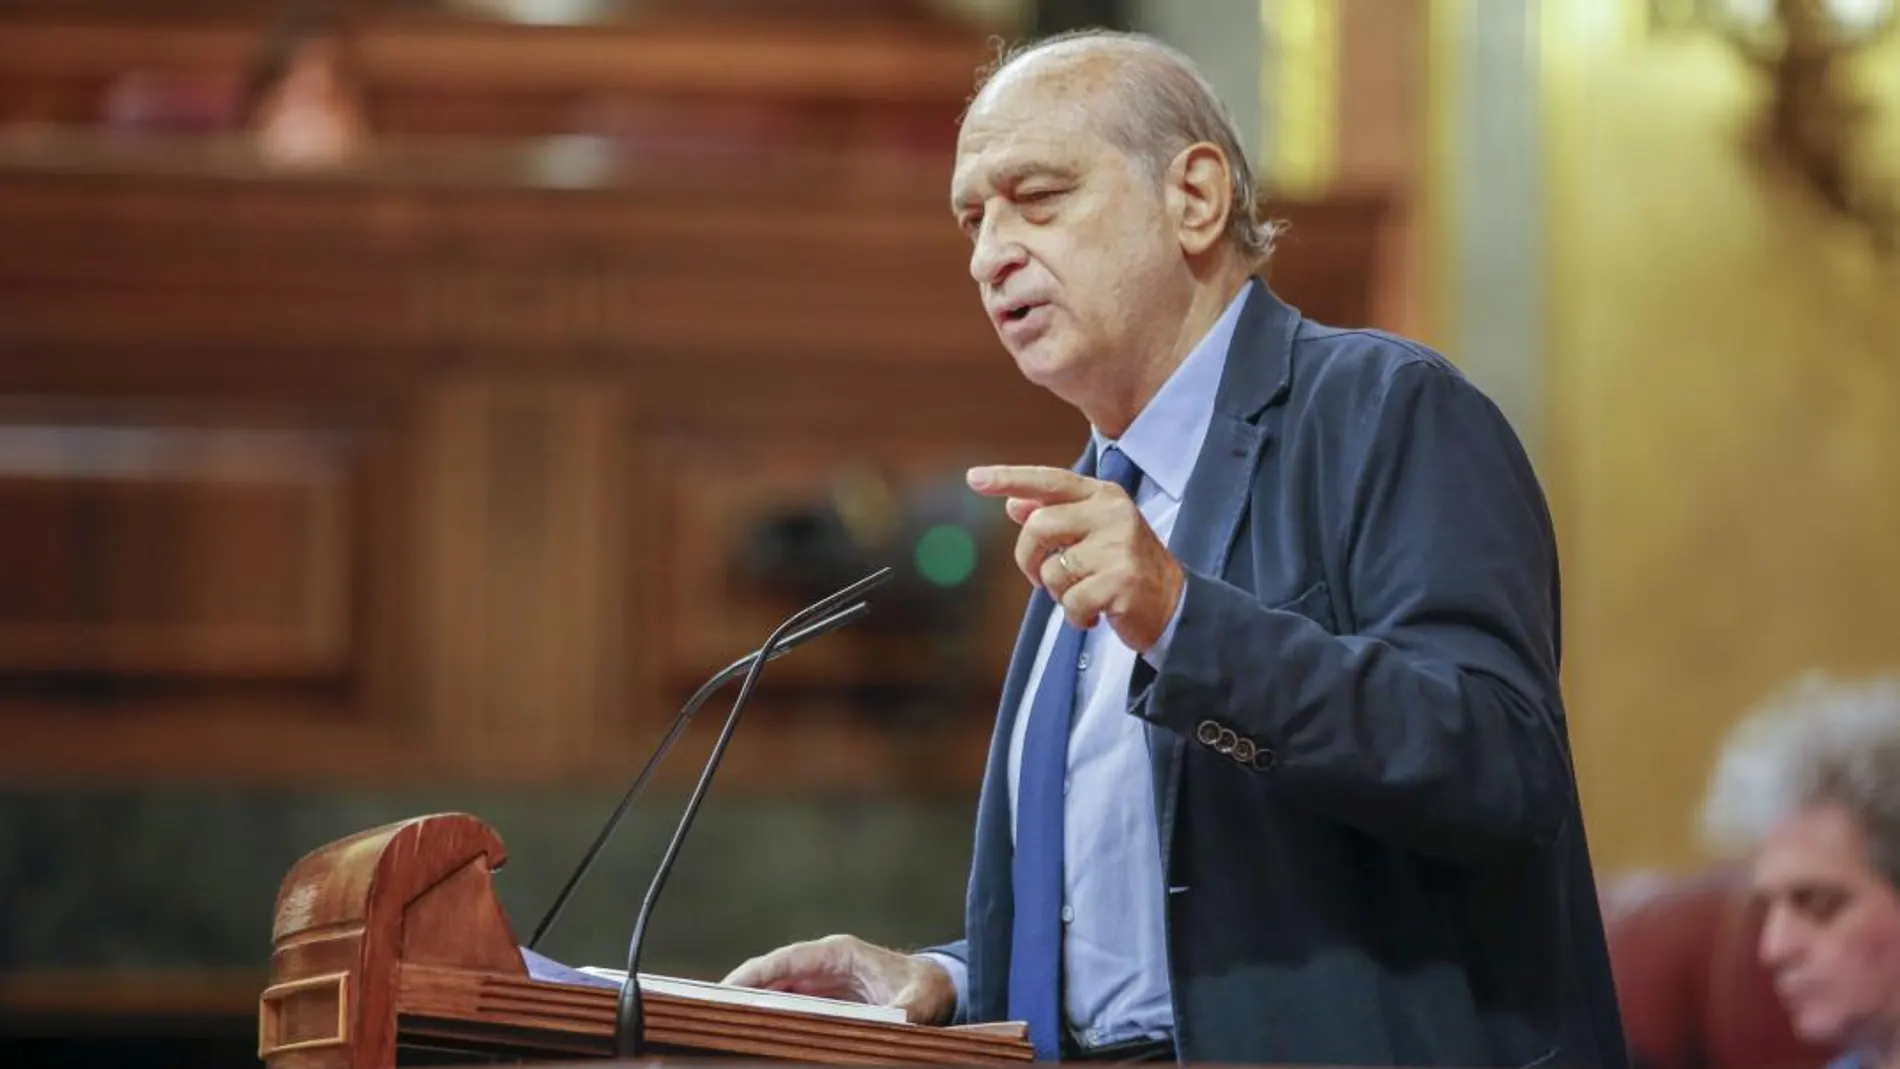 Jorge Fernández Díaz durante su intervención en el Congreso de los Diputados/Foto: J. Fernández-Largo